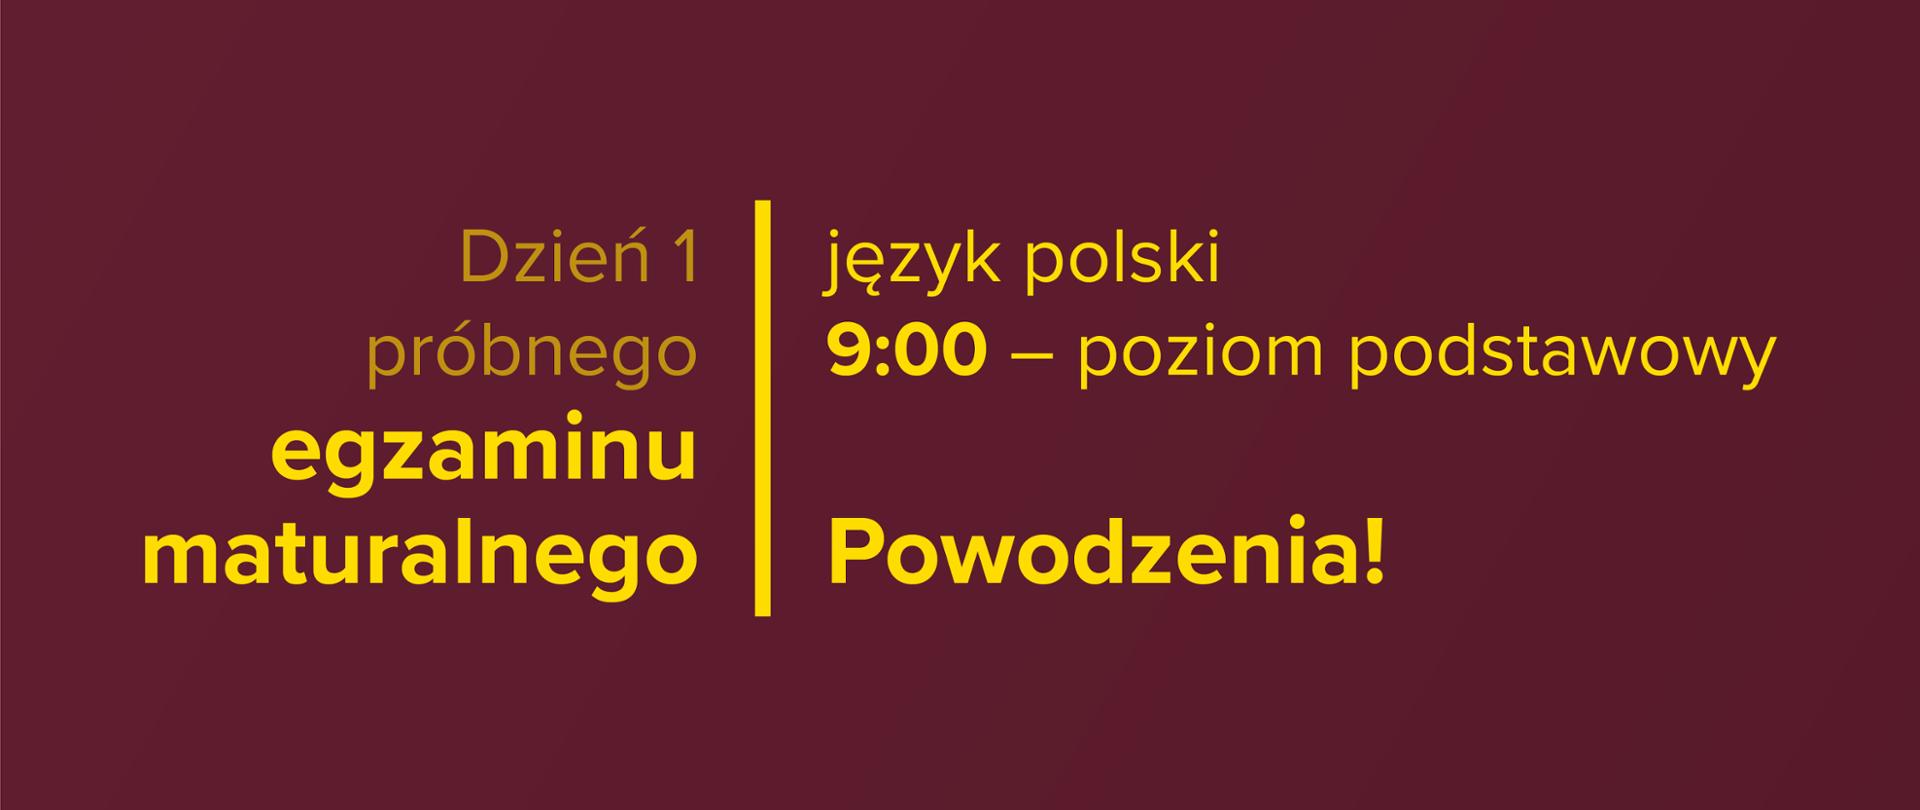 Żółty tekst na bordowym tle: Dzień 1. próbnego egzaminu maturalnego – język polski, 9:00 – poziom podstawowy. Powodzenia!